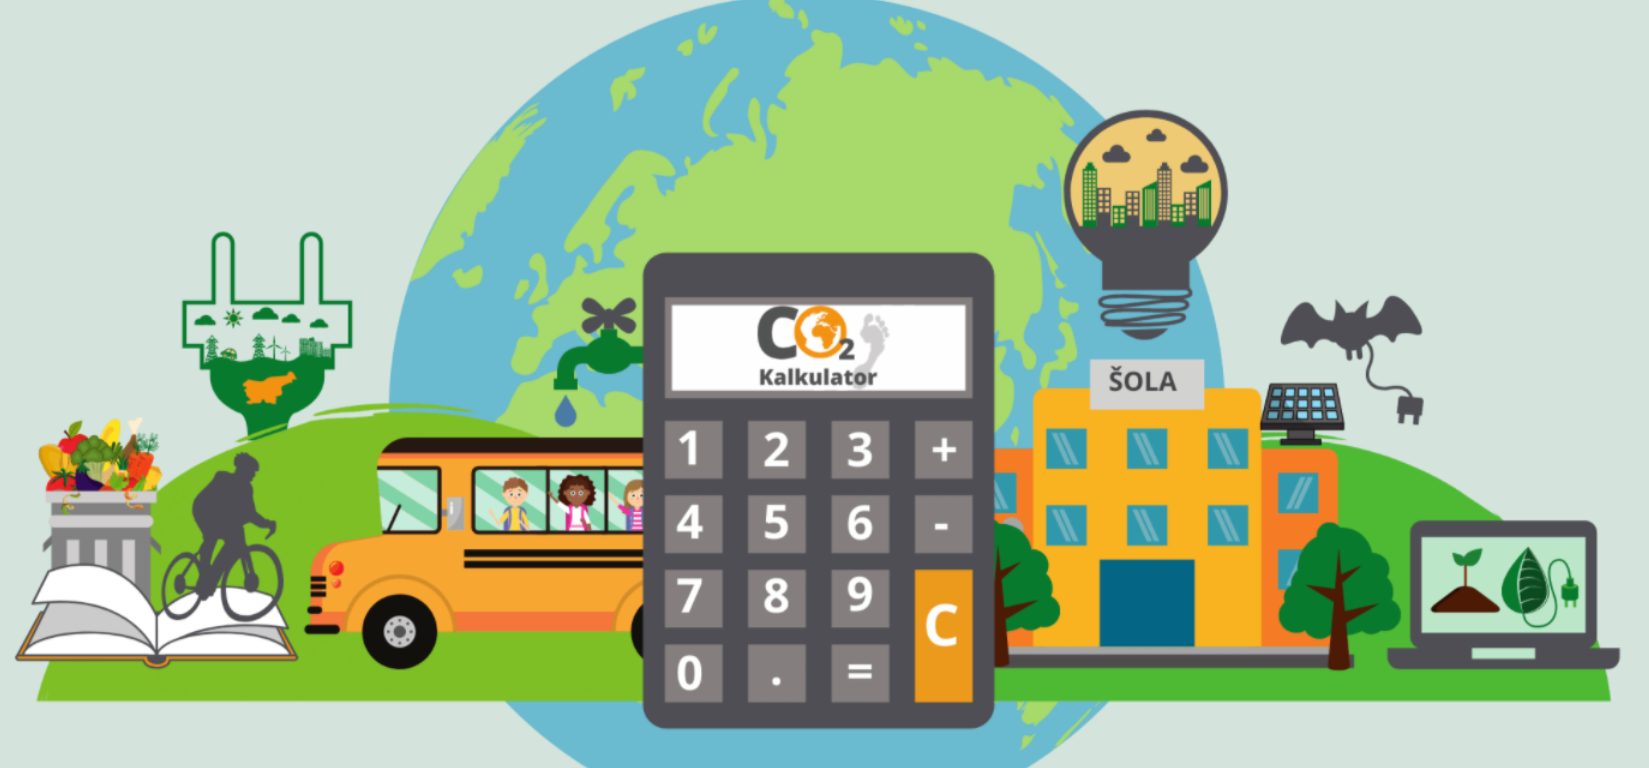 Spletna stran Eko šole, ki vsebuje fotografijo CO2 kalkulatorja ter drugih eko elementov v ozadju pa je planet Zemlja